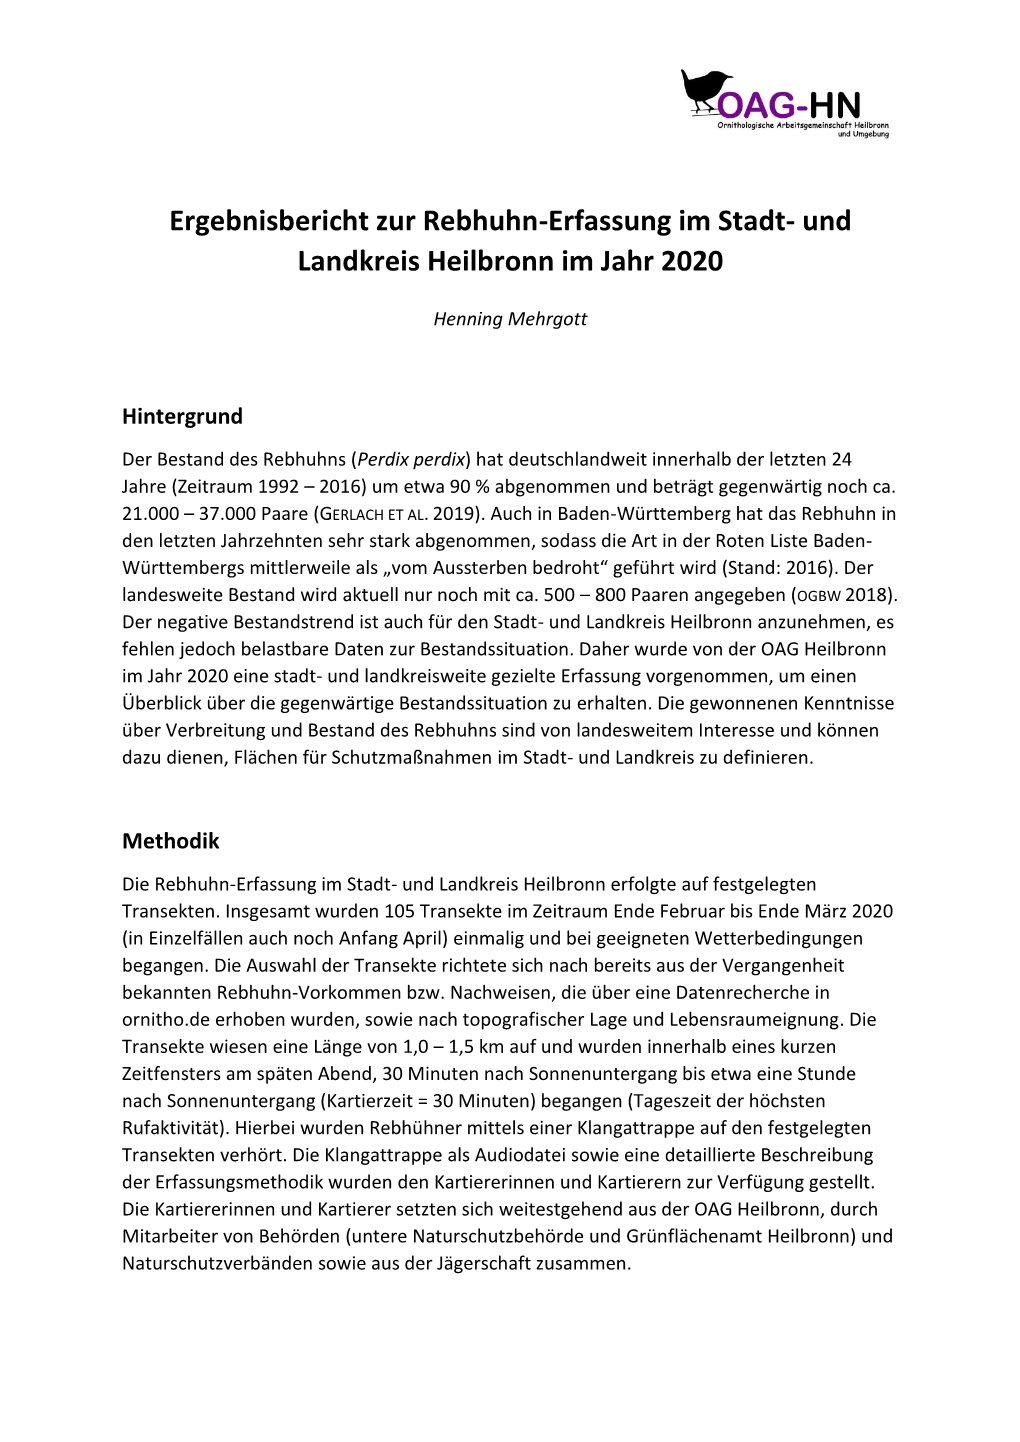 Ergebnisbericht Zur Rebhuhn-Erfassung Im Stadt- Und Landkreis Heilbronn Im Jahr 2020